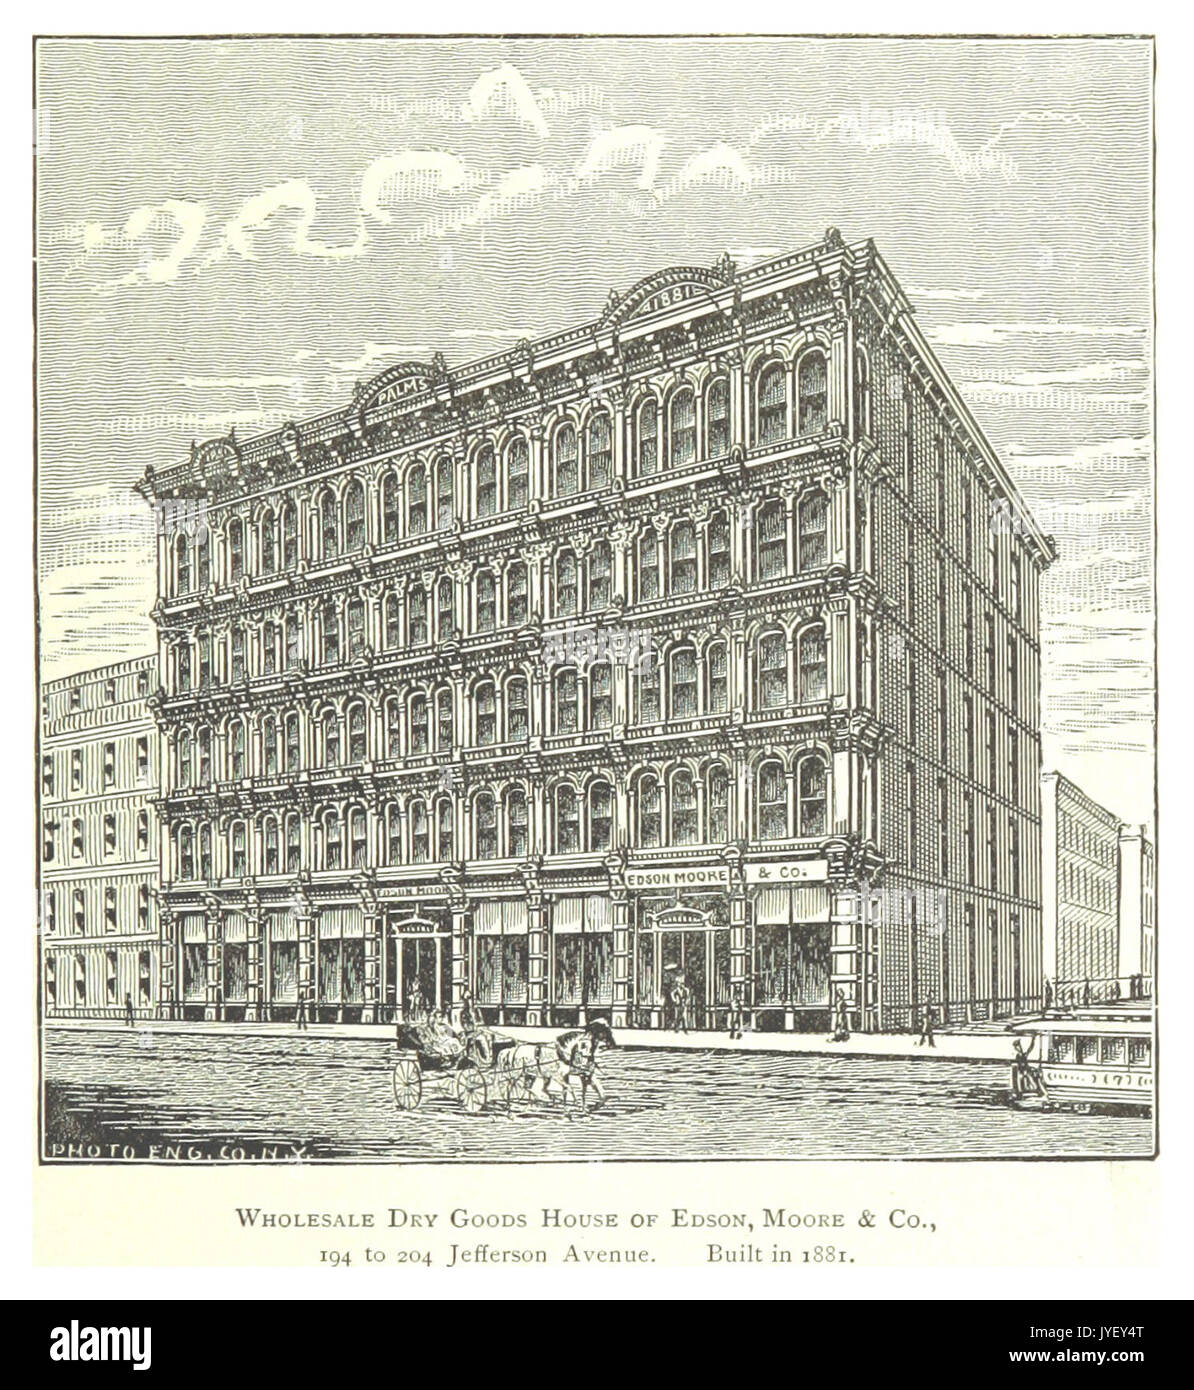 Imprenditore(1884) Detroit, p833 COMMERCIO ALL'INGROSSO prodotti asciutti CASA DI EDSON,MOORE & CO. 194 a 204 Jefferson Avenue. Costruito nel 1881 Foto Stock